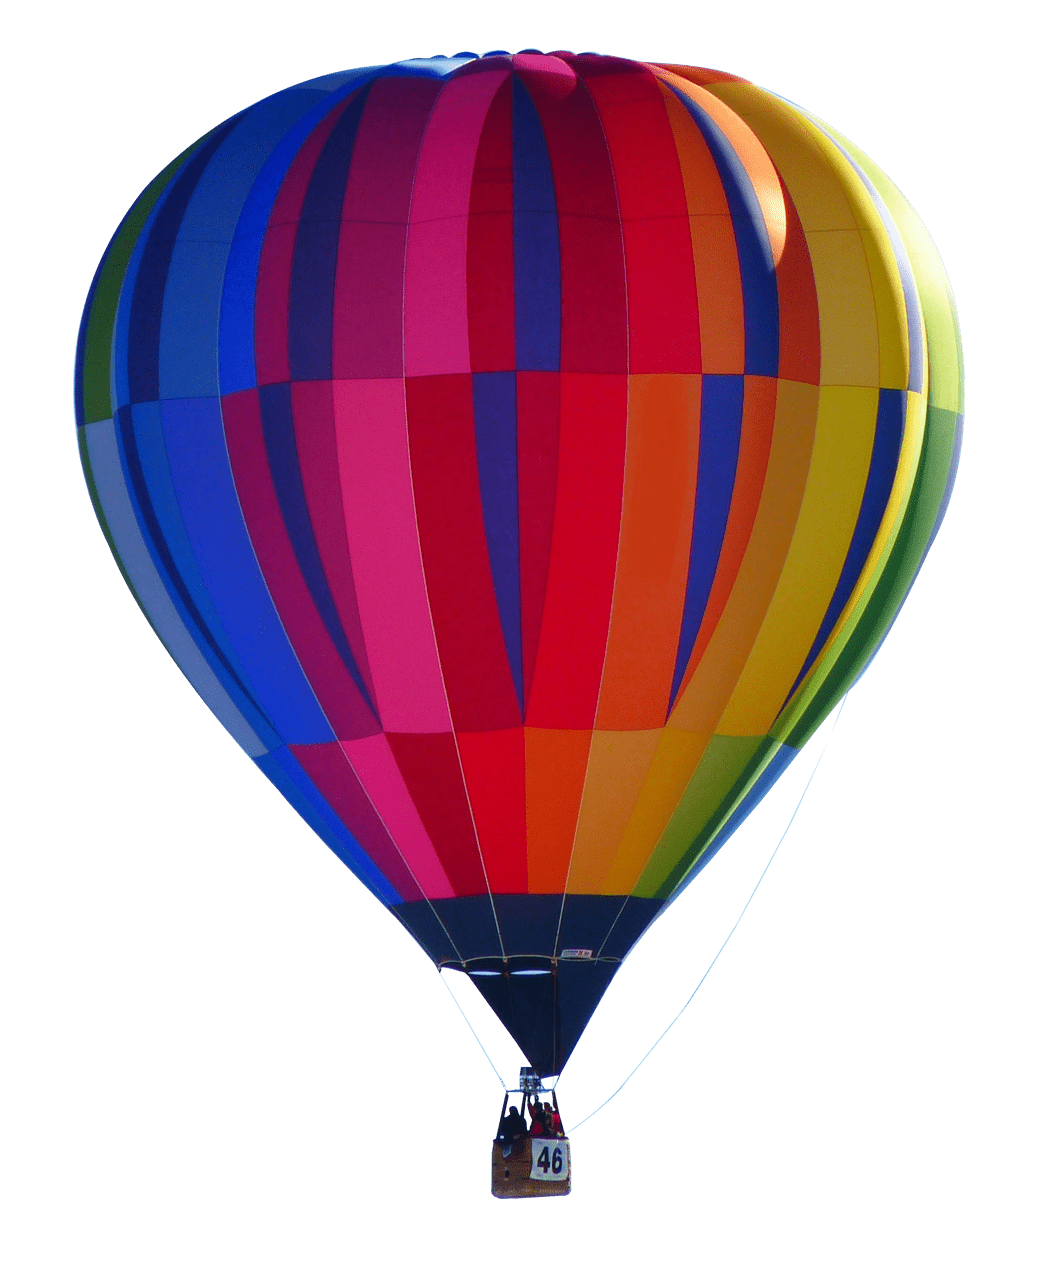 Gas hot air balloon